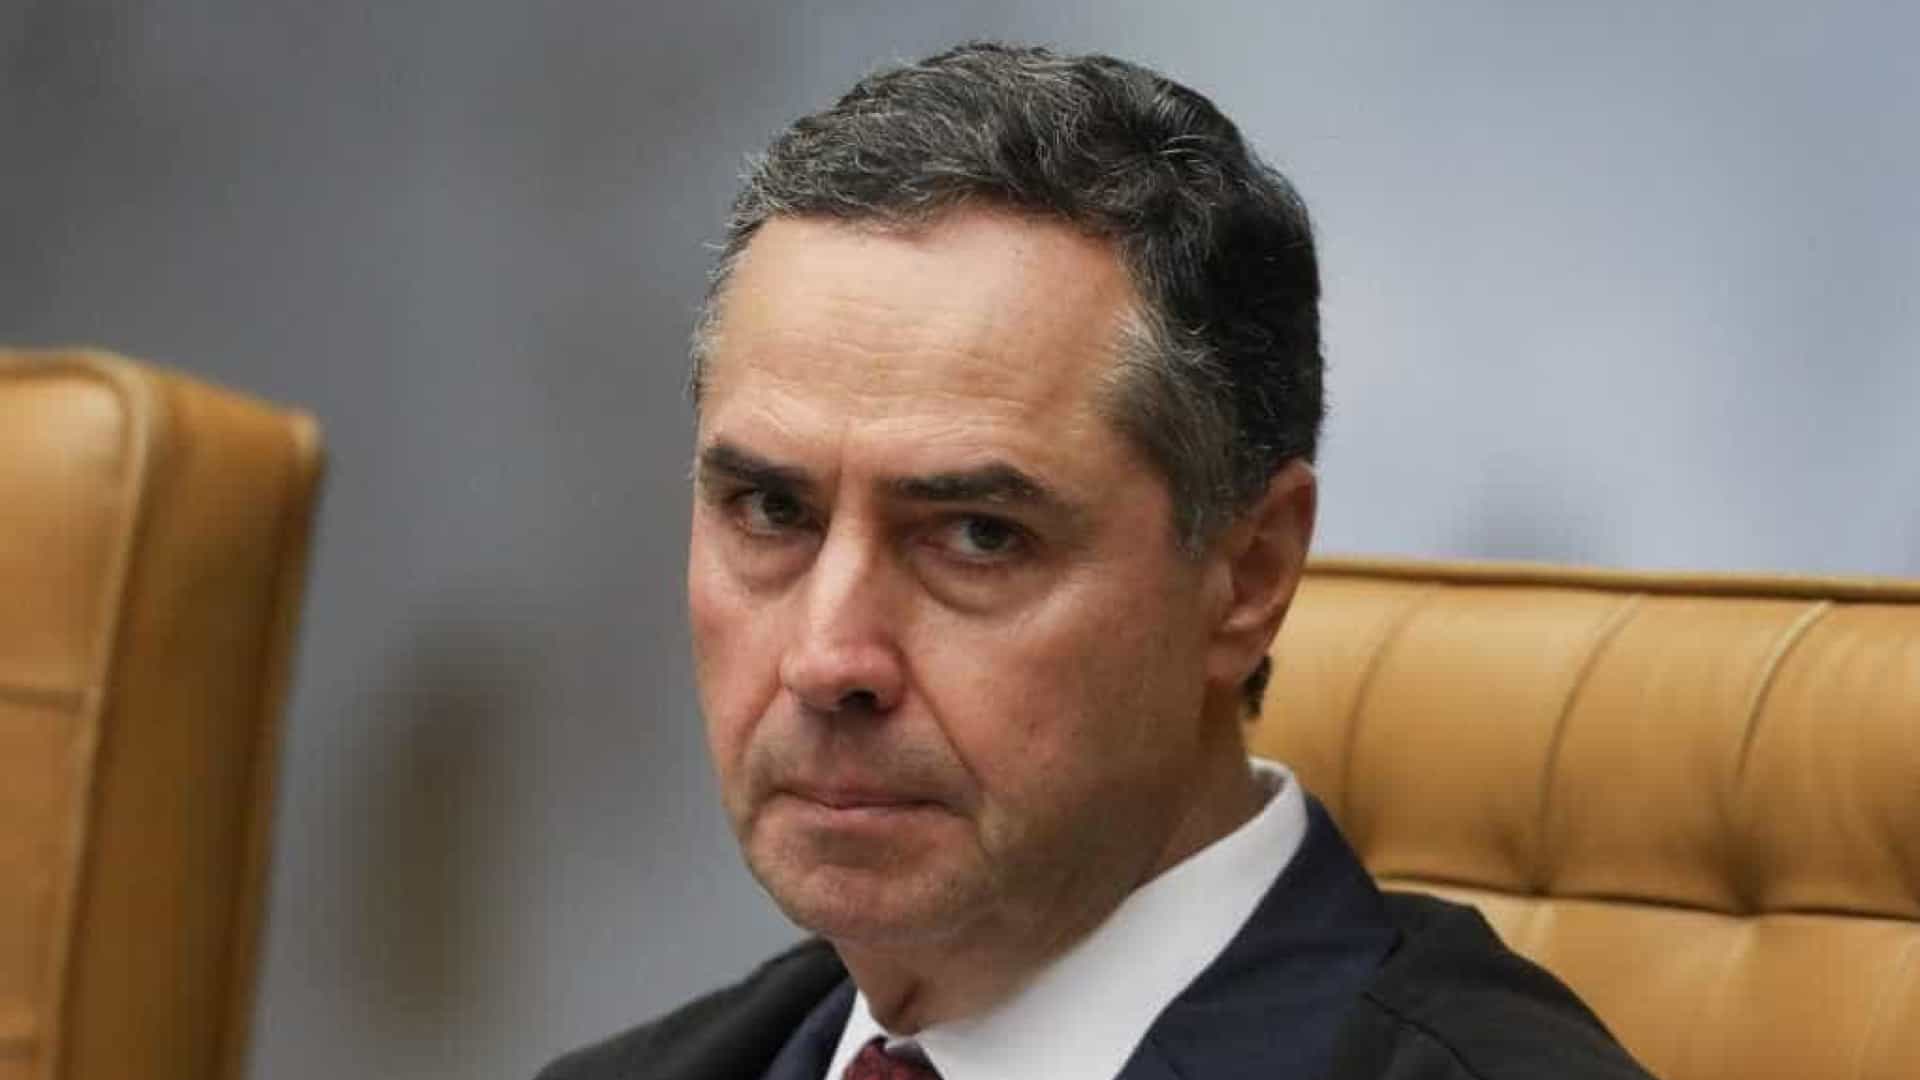 VÍDEO - Barroso detona ataques de Bolsonaro às eleições: "Repetição mambembe de Trump"